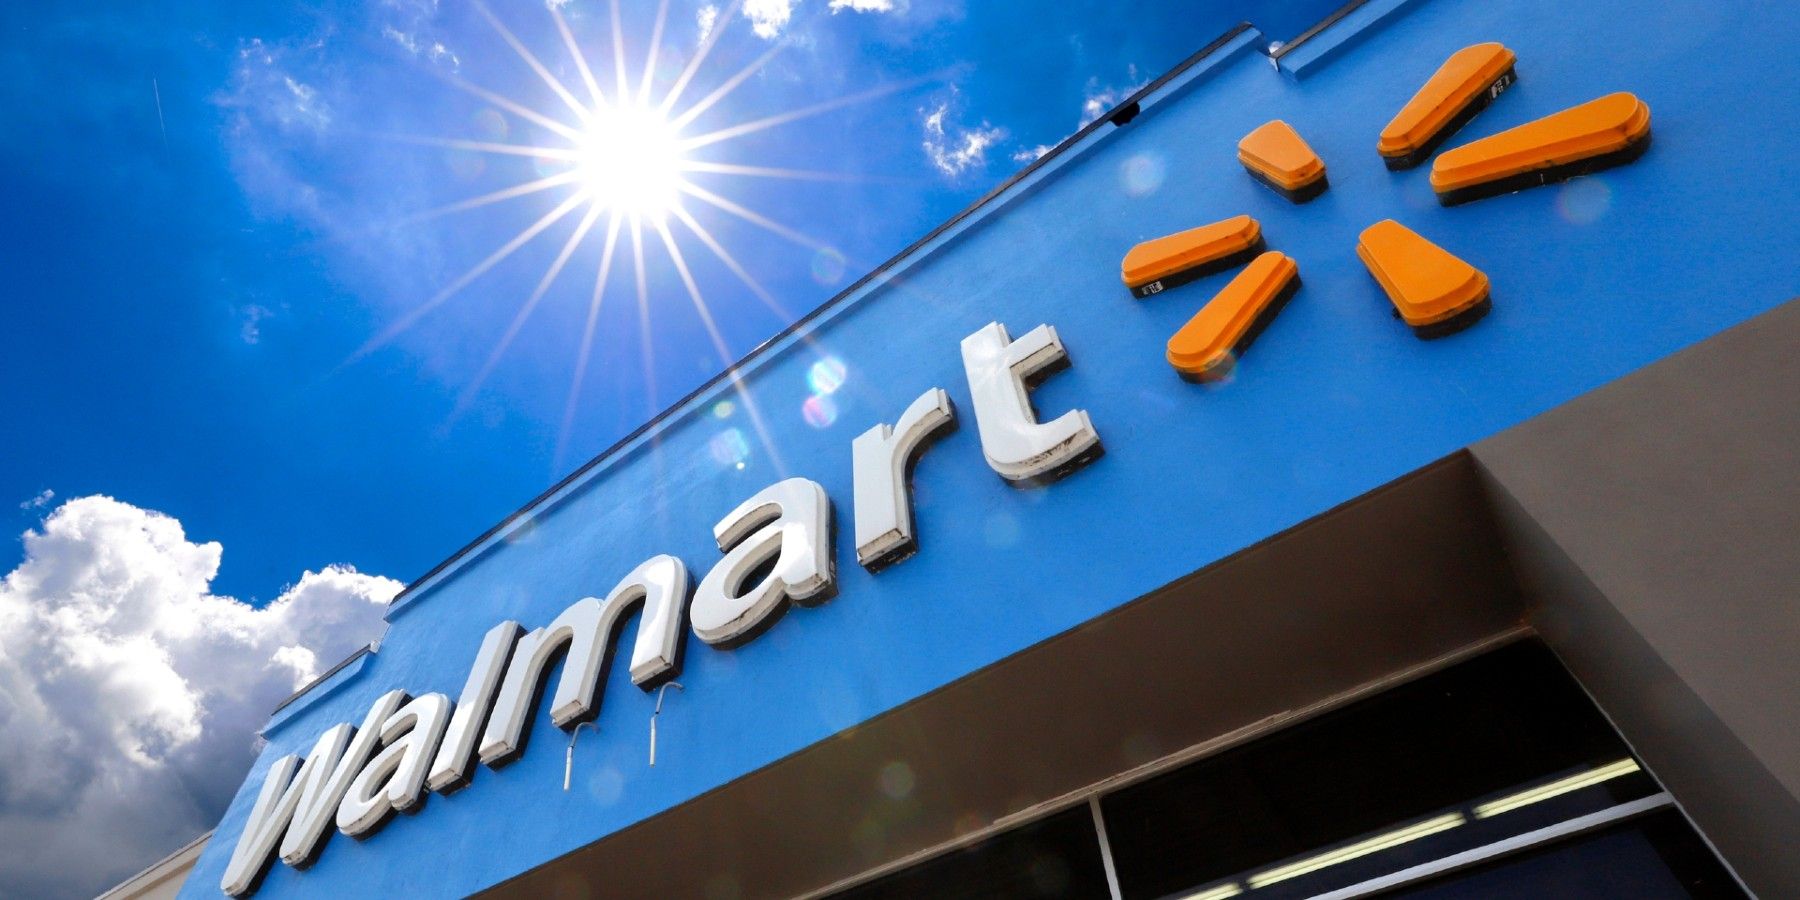 Walmart Reveals Its Early Black Friday Deals